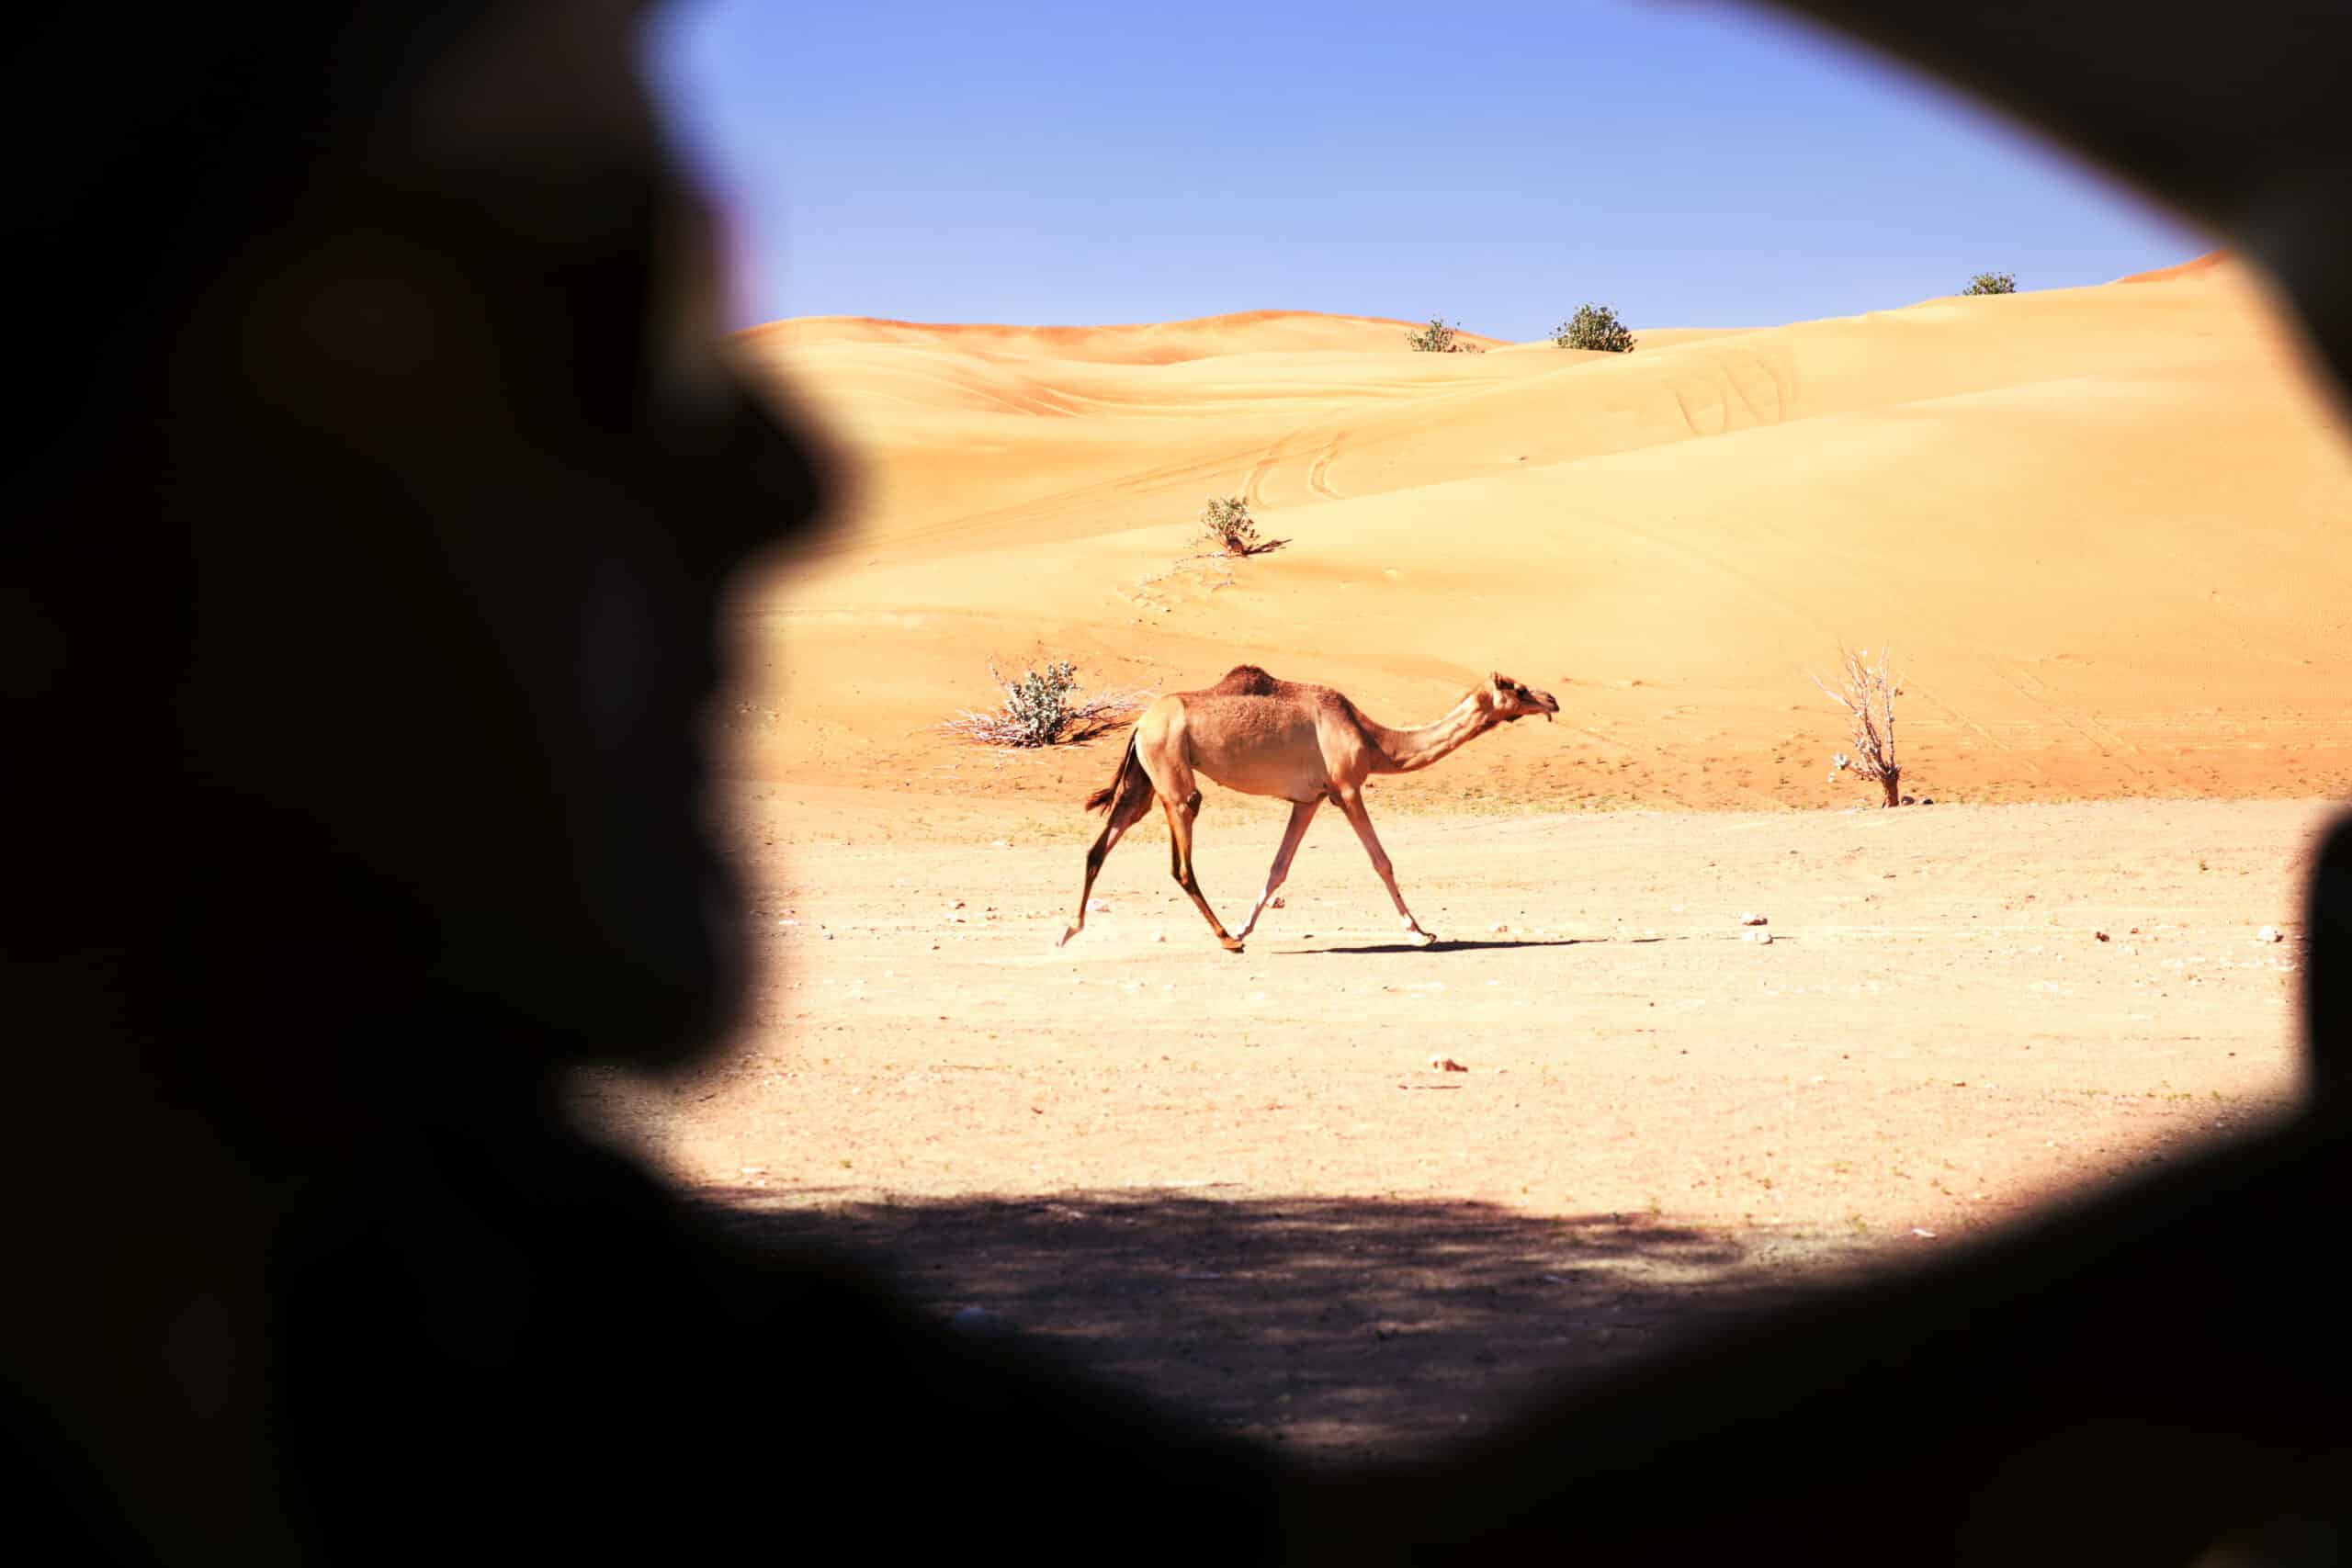 Ein Kamel marschiert durch eine Wüstenlandschaft, eingerahmt von einer dunklen Silhouette im Vordergrund, die an einen Höhlen- oder Tunneleingang erinnert. Die Szene spielt unter einem klaren blauen Himmel. © Fotografie Tomas Rodriguez